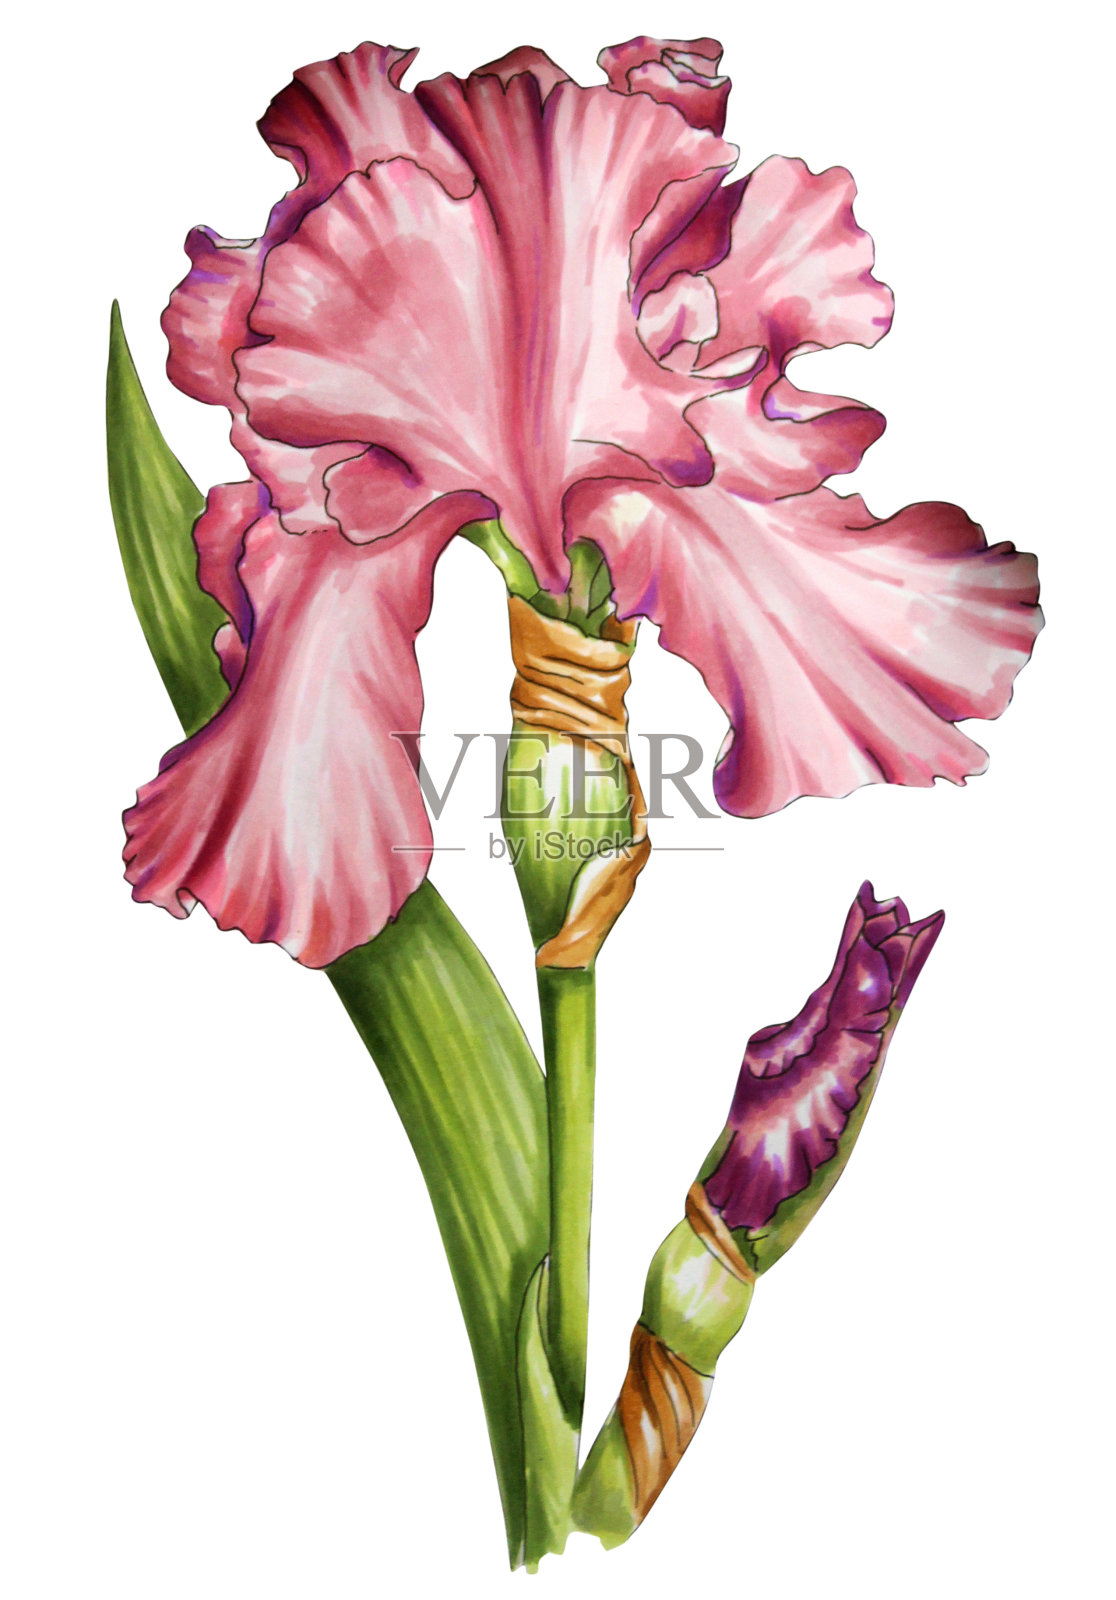 白色背景上美丽的粉红色蝴蝶花插画图片素材